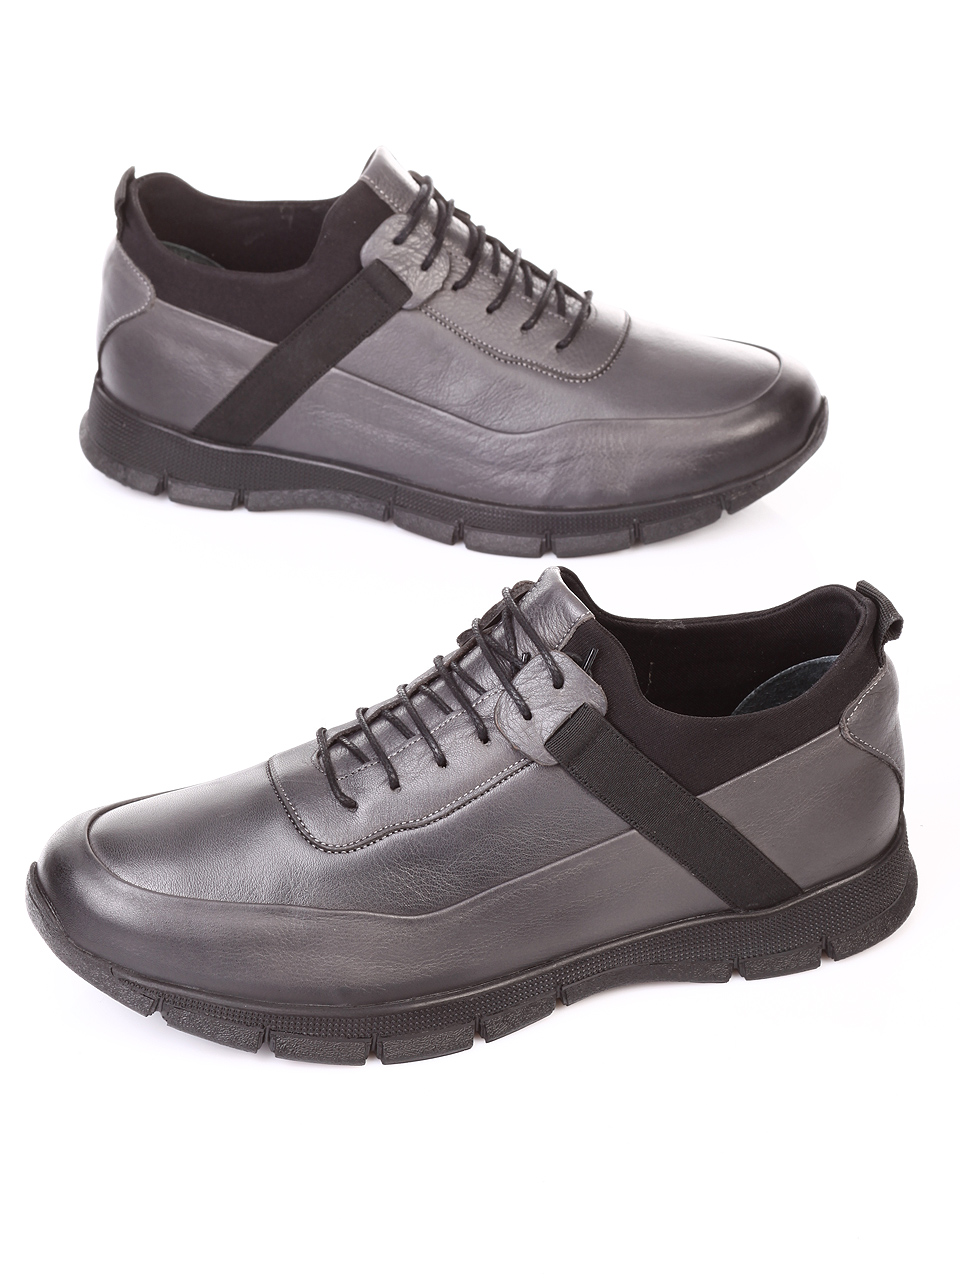 Ежедневни мъжки обувки от естествена кожа 7AT-181124 grey